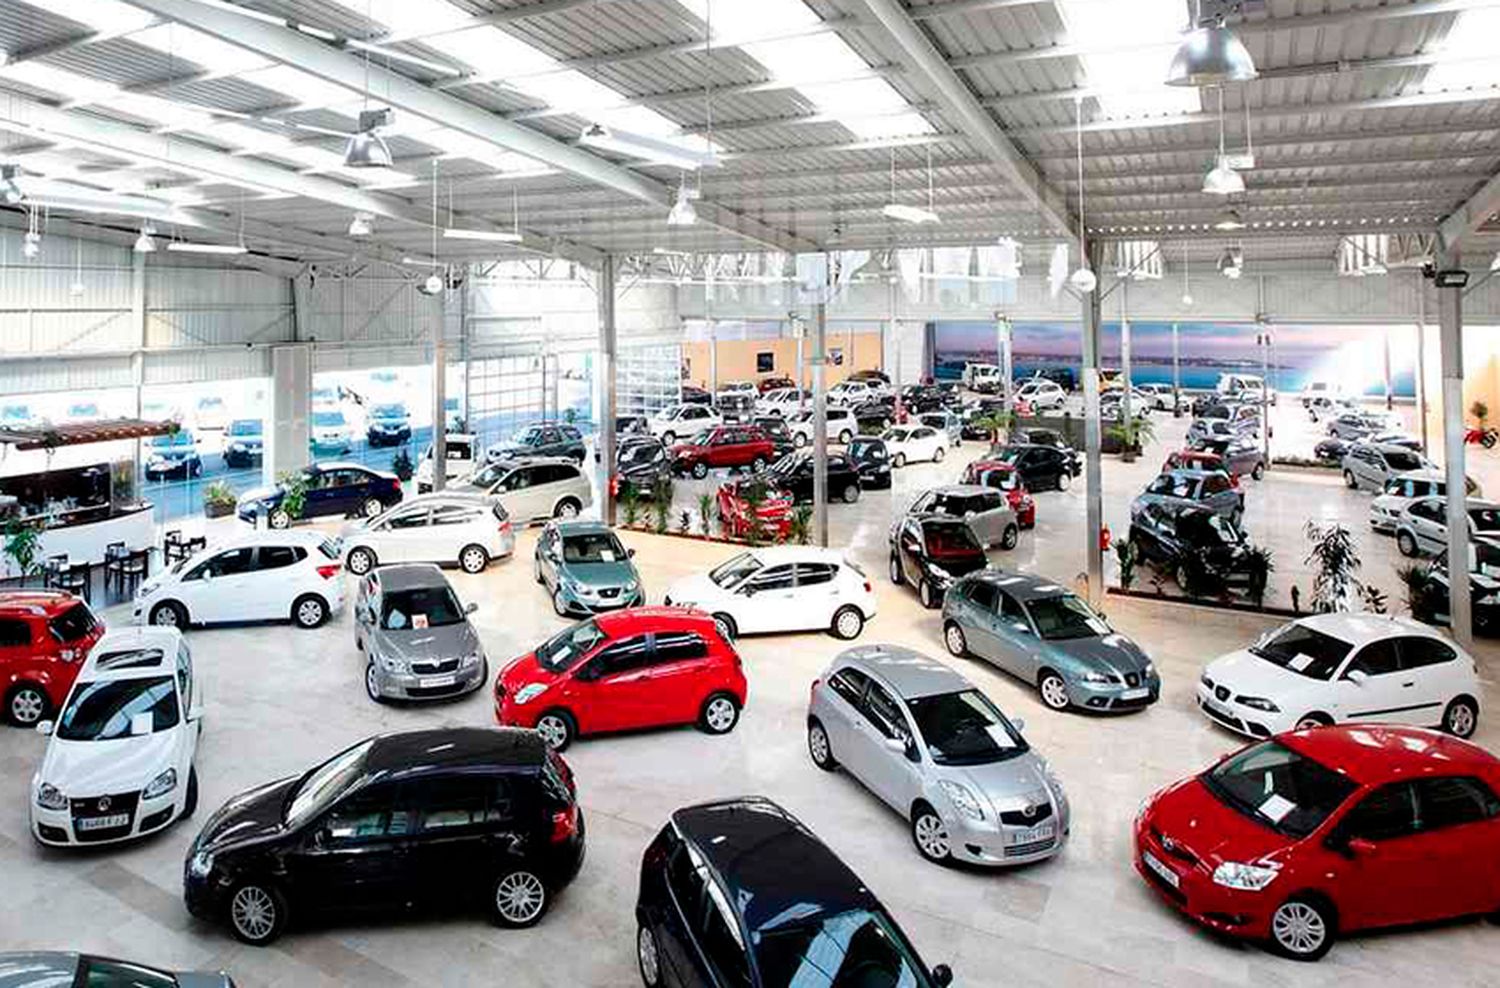 La Cámara de Comercio Automotor dice que “los autos usados están empoderados”